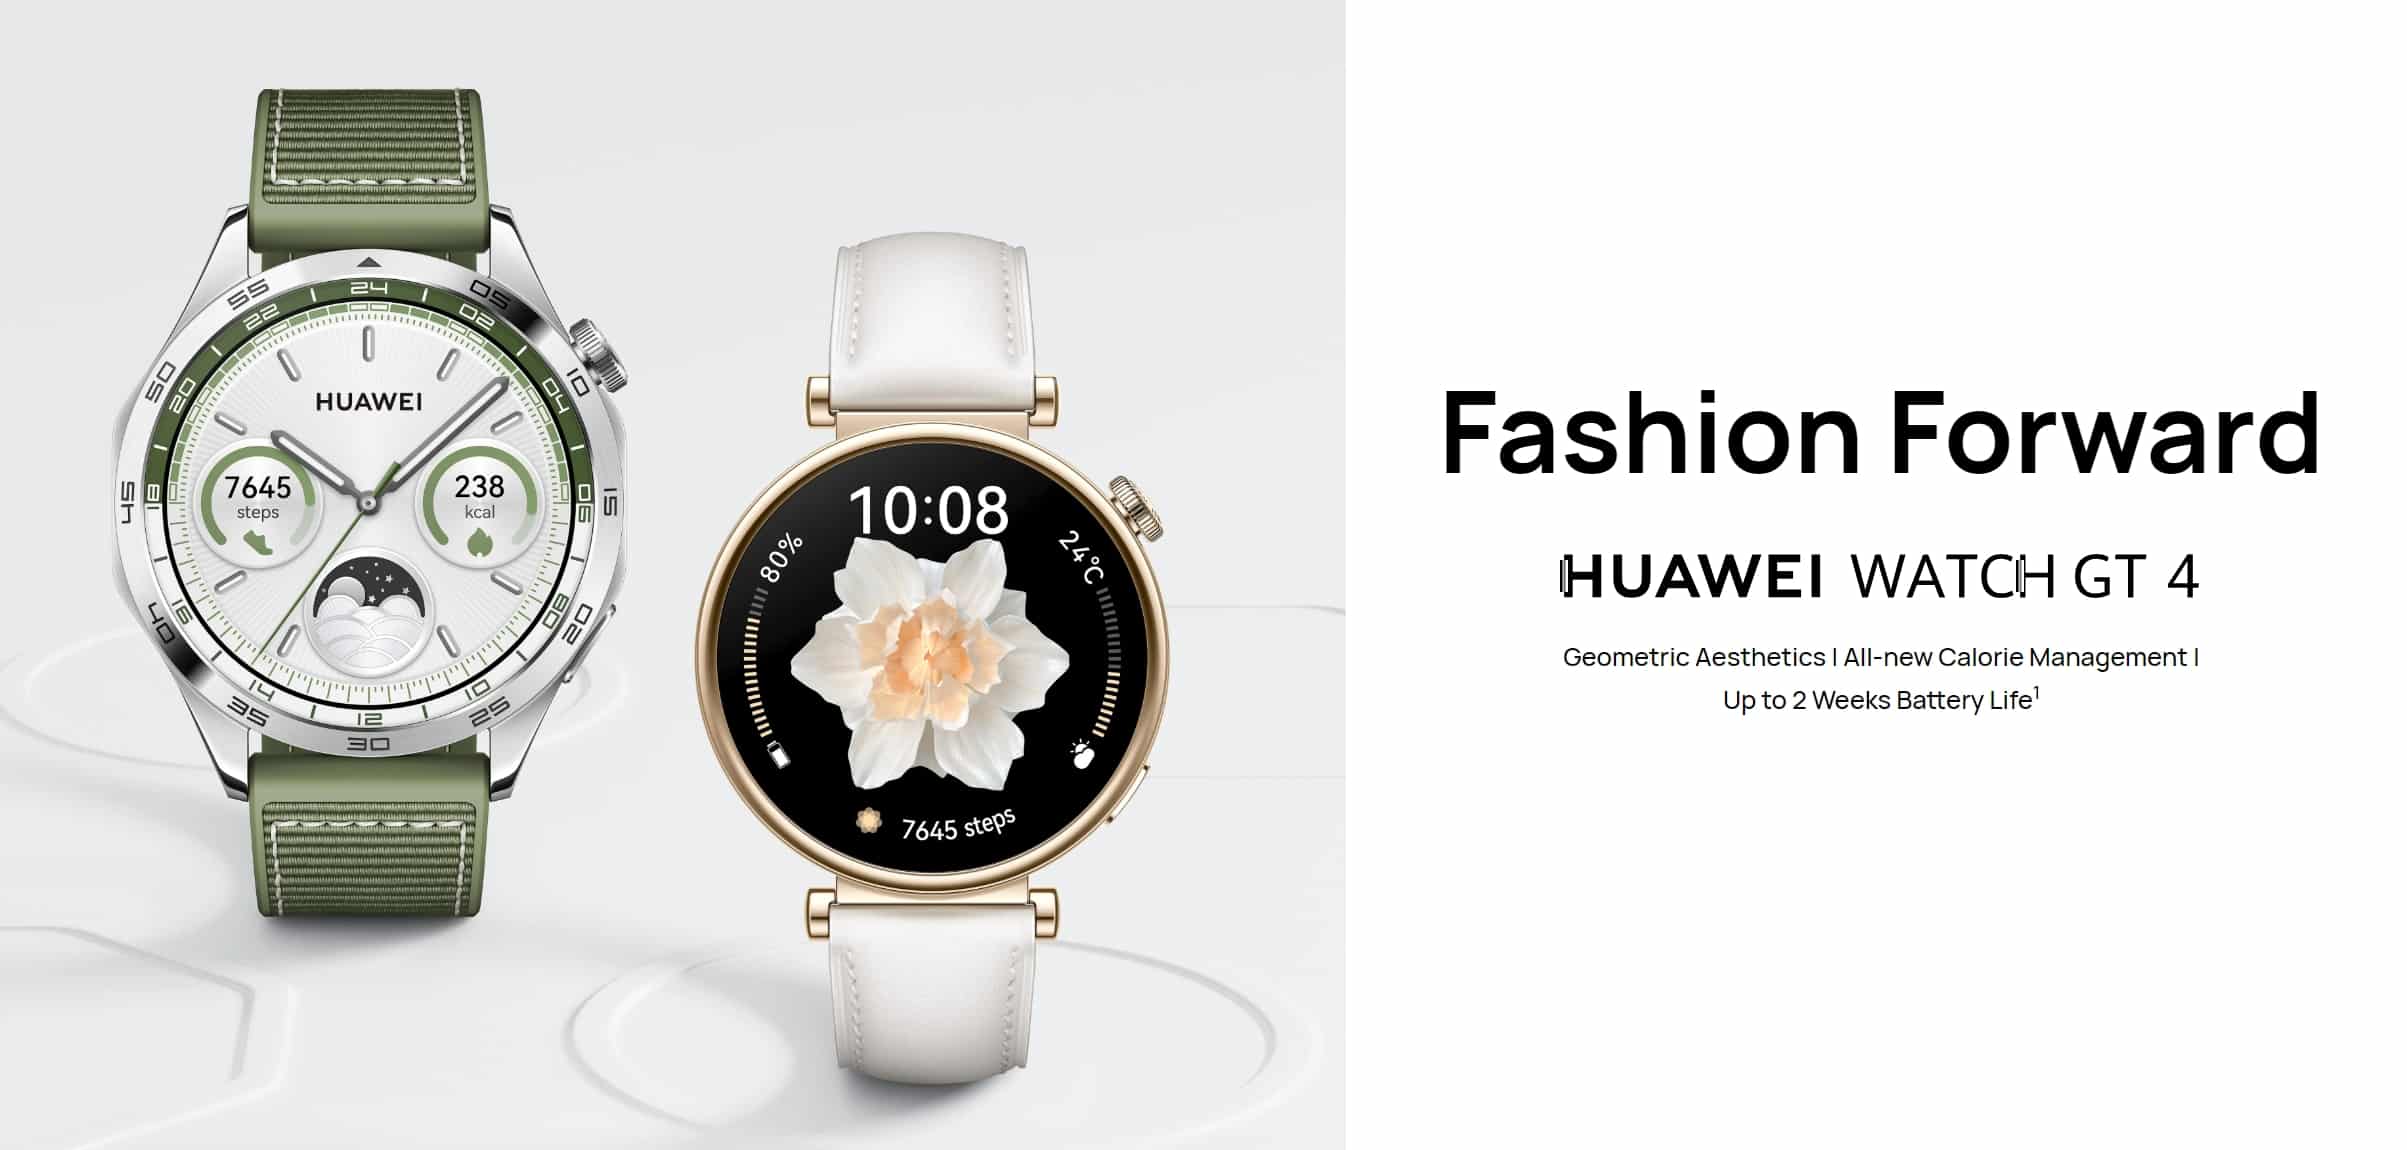 HUAWEI WATCH GT 4 Smart Watch 5